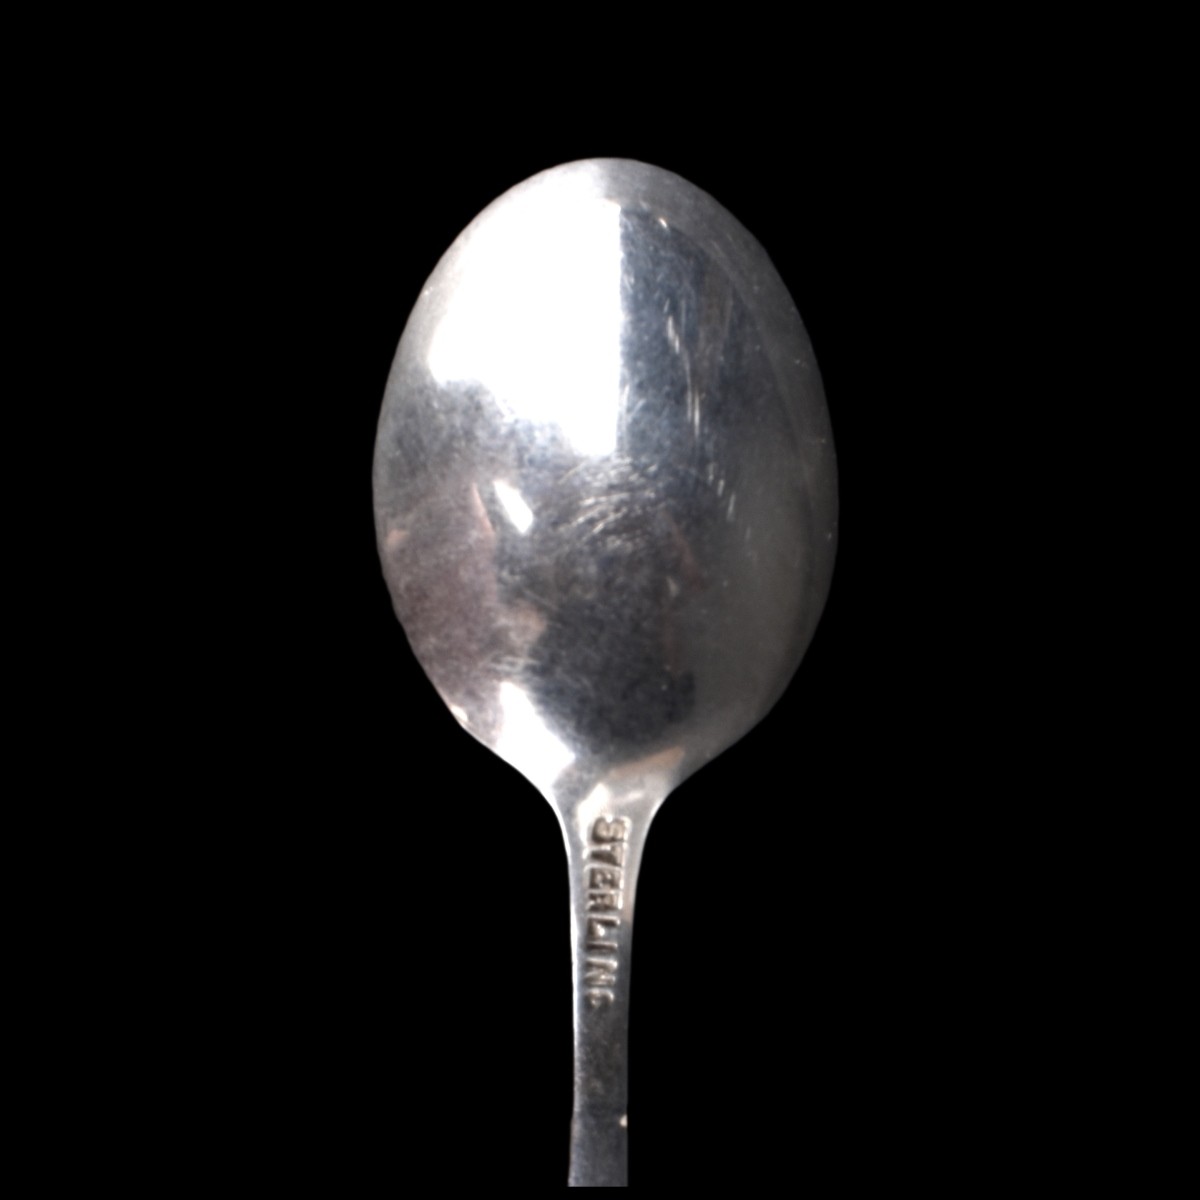 Twelve (12) Sterling Silver Demitasse Spoons